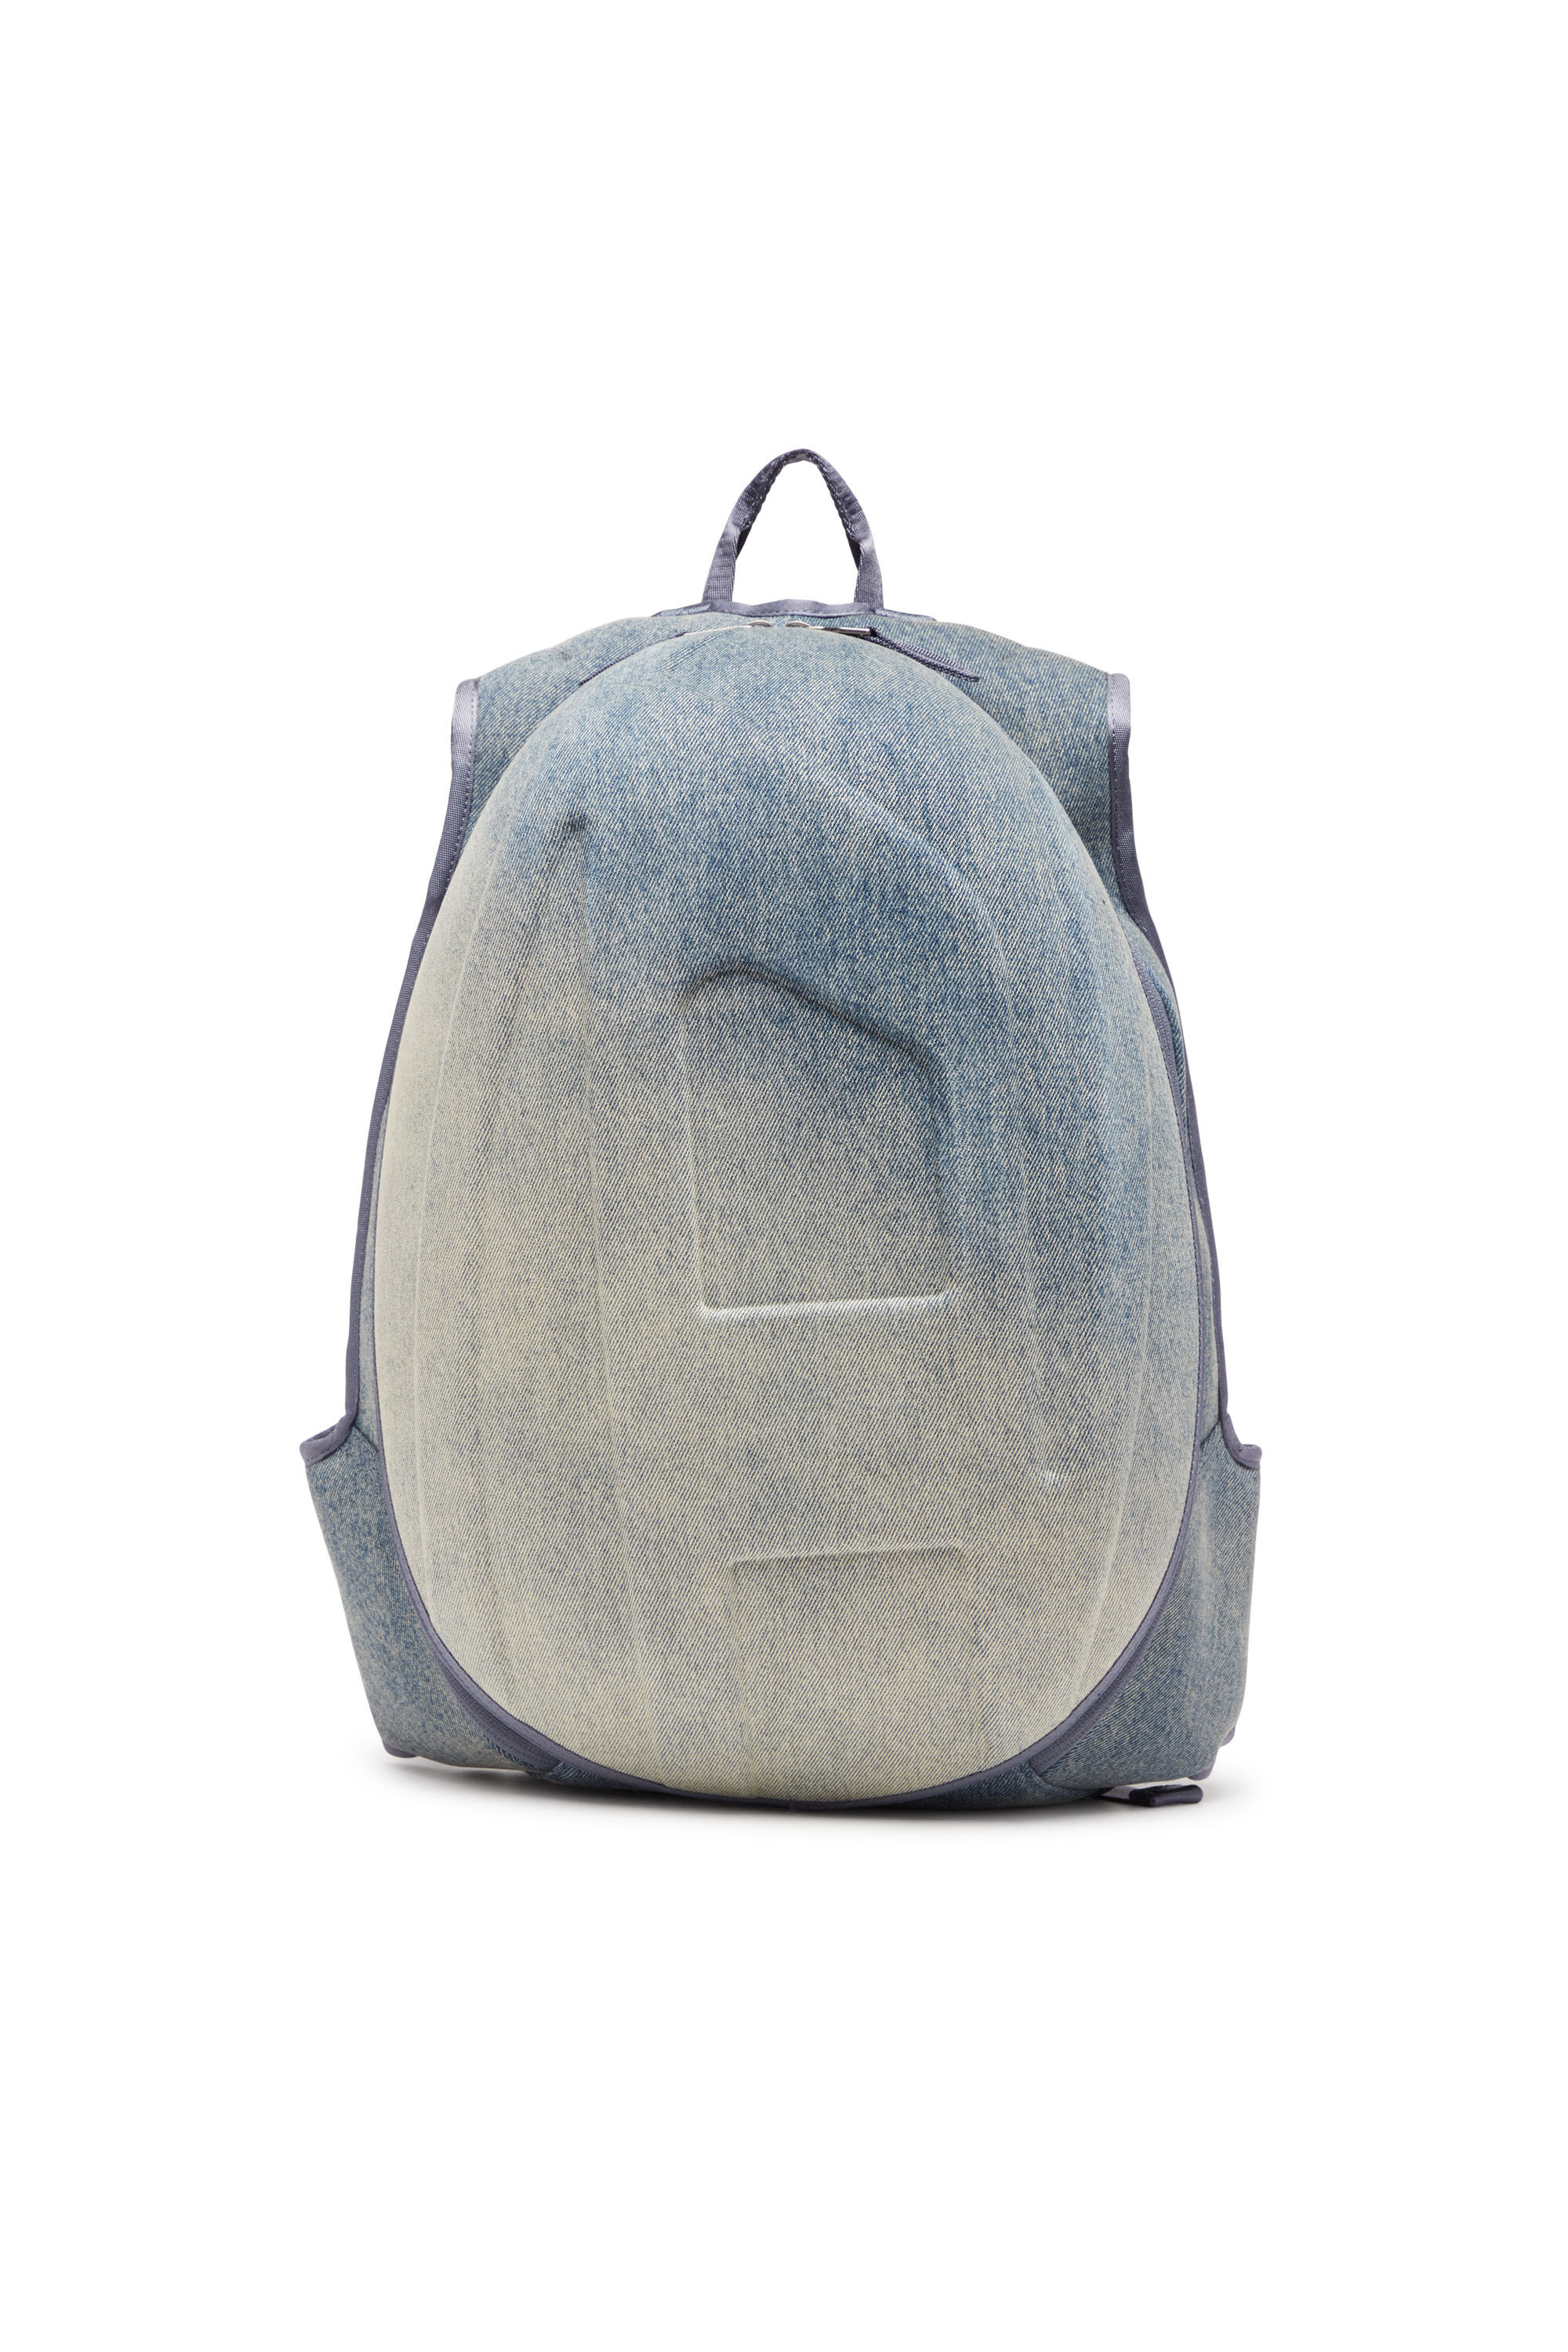 Diesel - 1DR-POD BACKPACK, Man 1DR-Pod Backpack - Hard shell denim backpack in Multicolor - Image 1